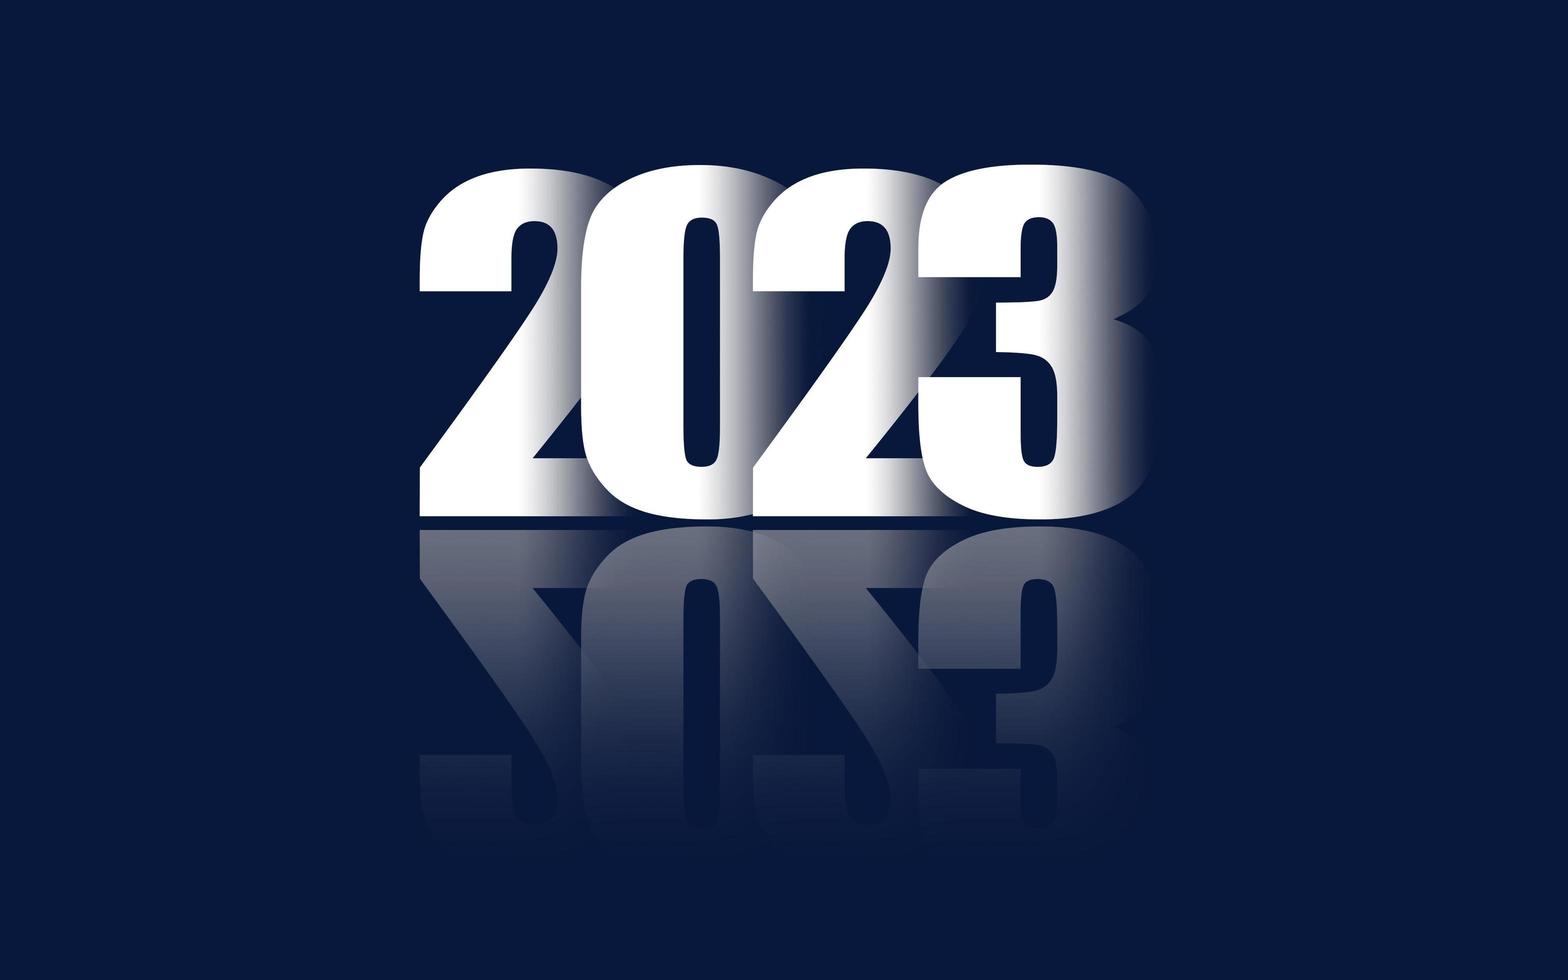 2023 creatief modern innovatie en technologie concept reeks van gelukkig nieuw jaar affiches. ontwerp Sjablonen voor viering en seizoen decoratie. blauw helling achtergronden voor branding, spandoeken, covers foto